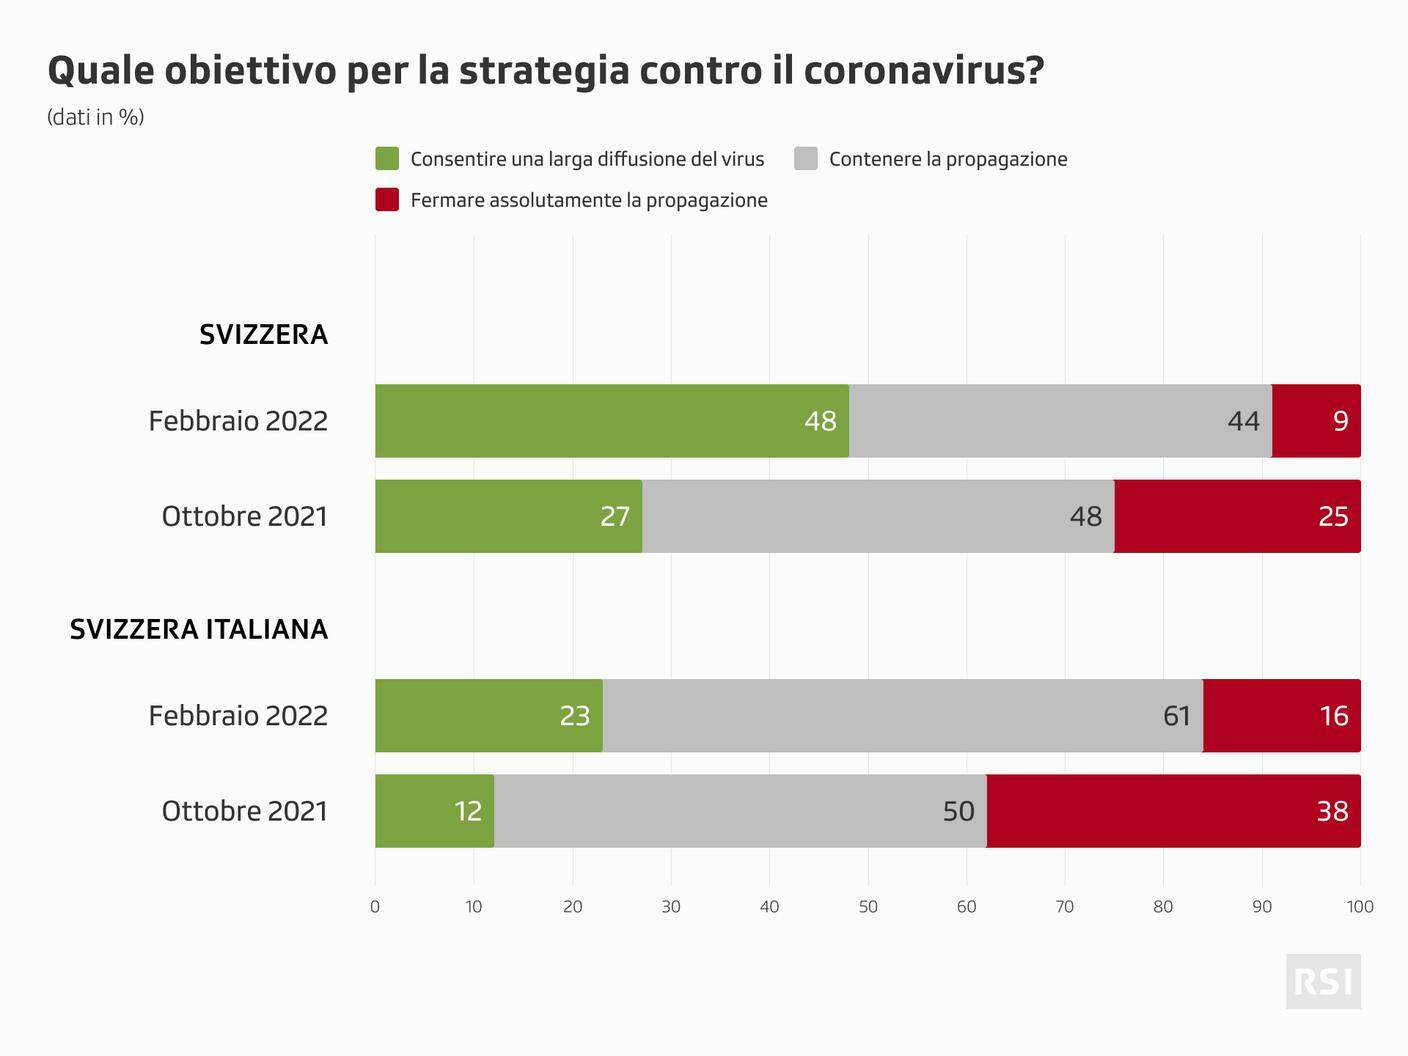 Quasi in maggioranza, a livello nazionale, la quota di coloro che concordano sul fatto di permettere una larga propagazione del coronavirus